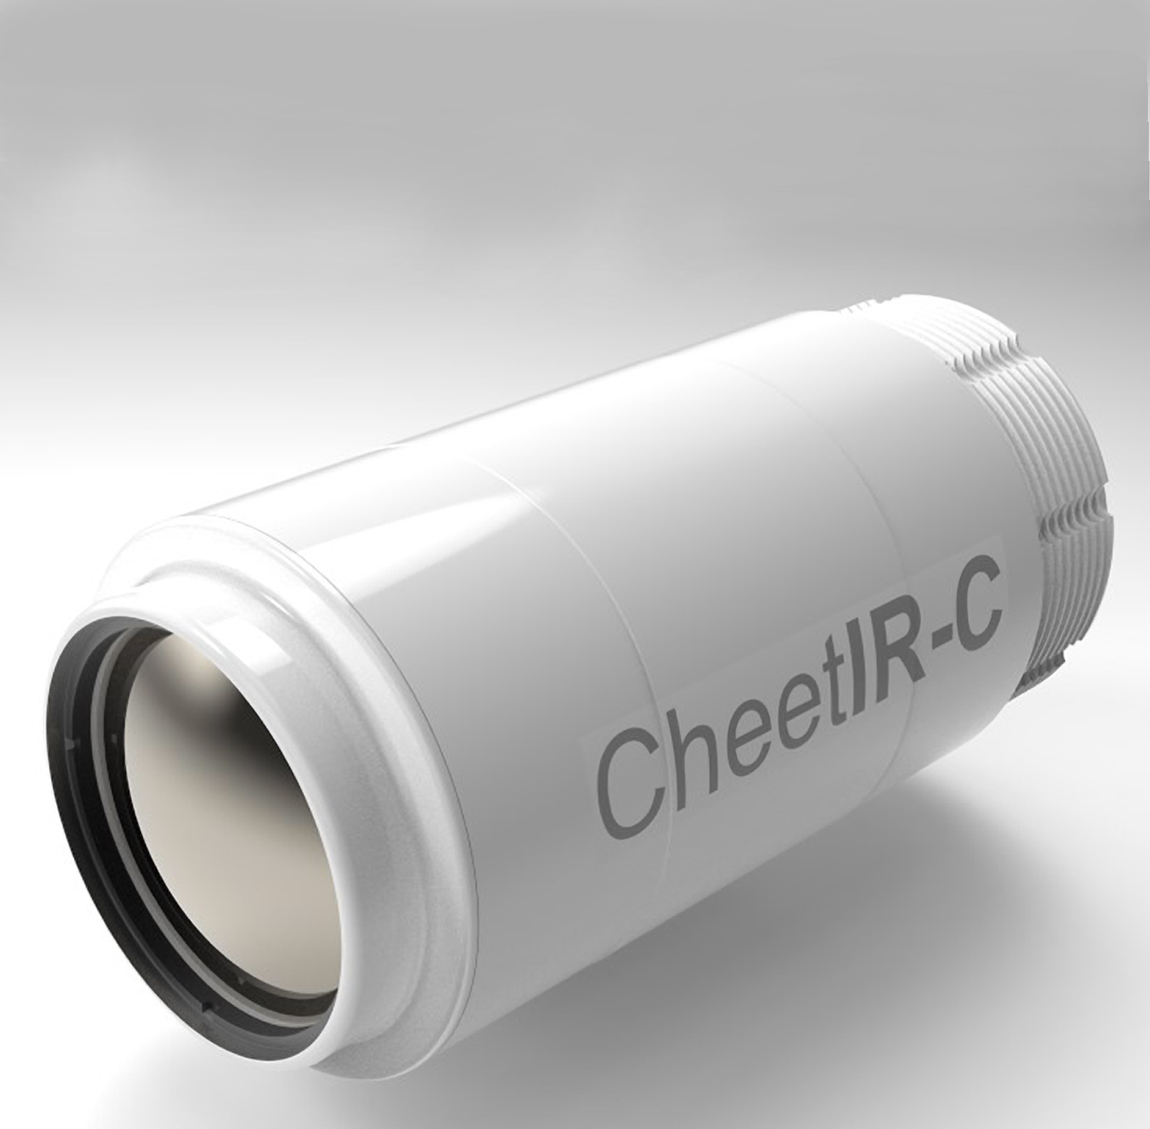 Ausgabebild einer CheetIR-C-Durchgangskamera